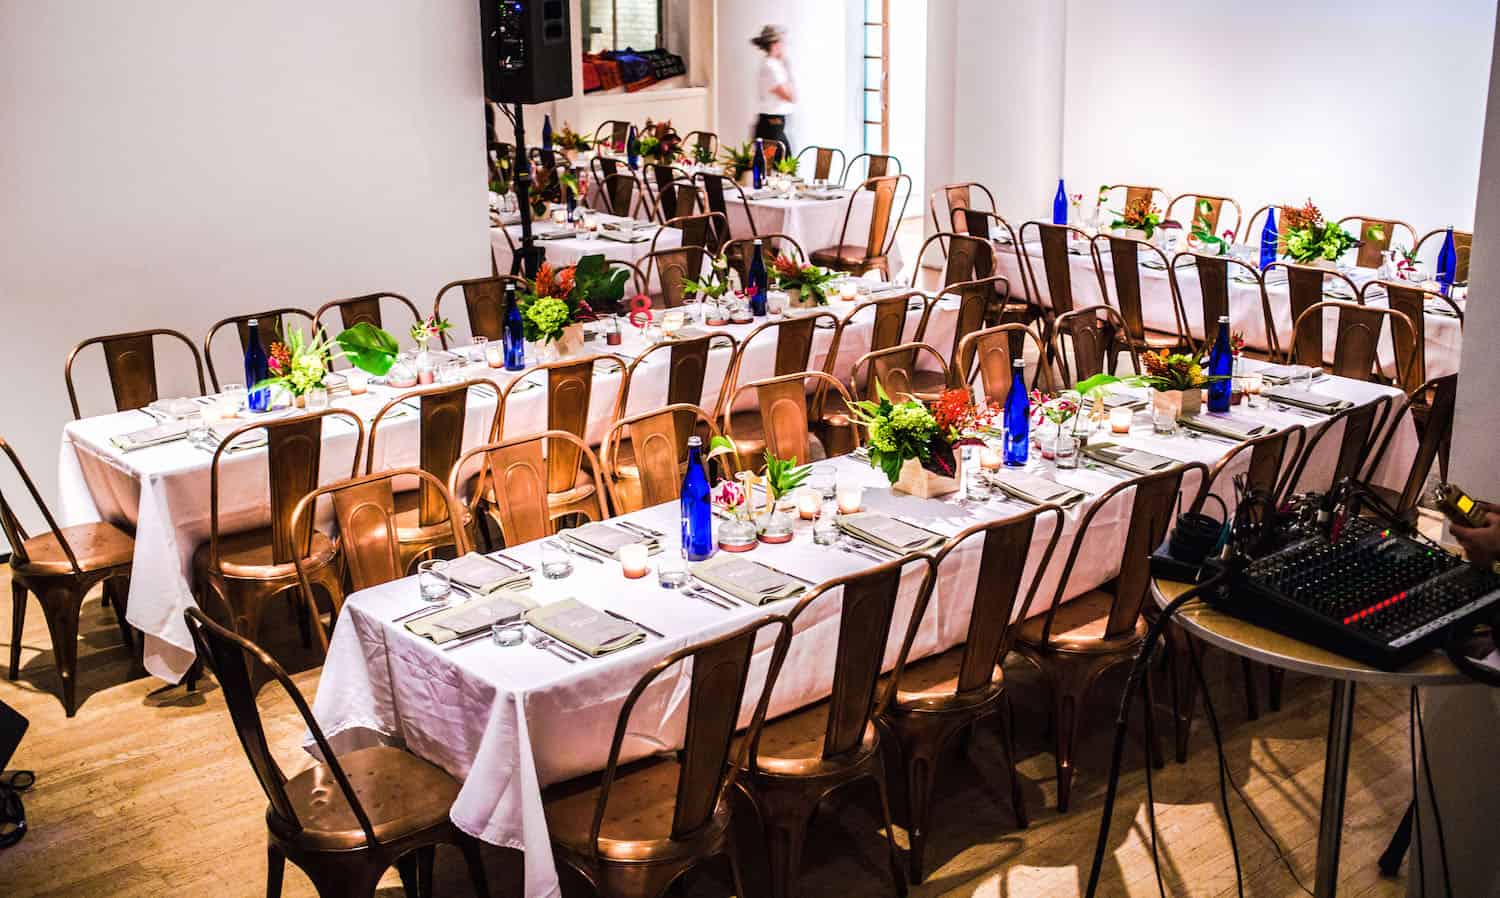 玛丽莎·利珀特（Marissa Lippert）和凯蒂·克朗（Katie Crown）举行了福利晚宴，以庆祝特朗普总统旅行禁令目标的七个国家的美食和文化。